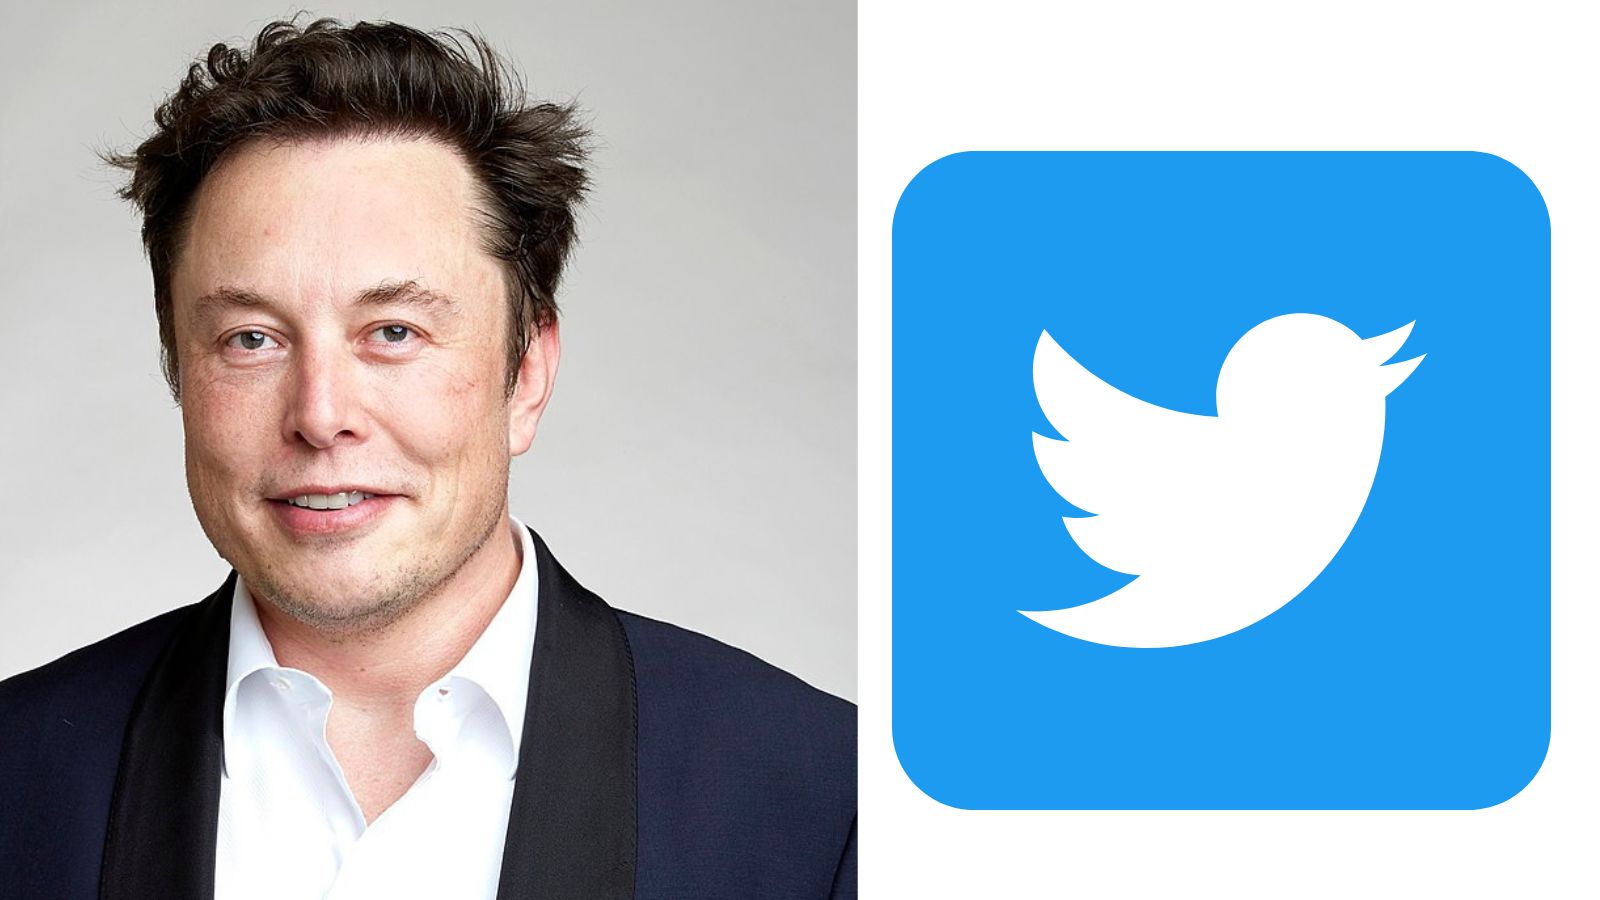 Elon Musk confirma que compró Twitter